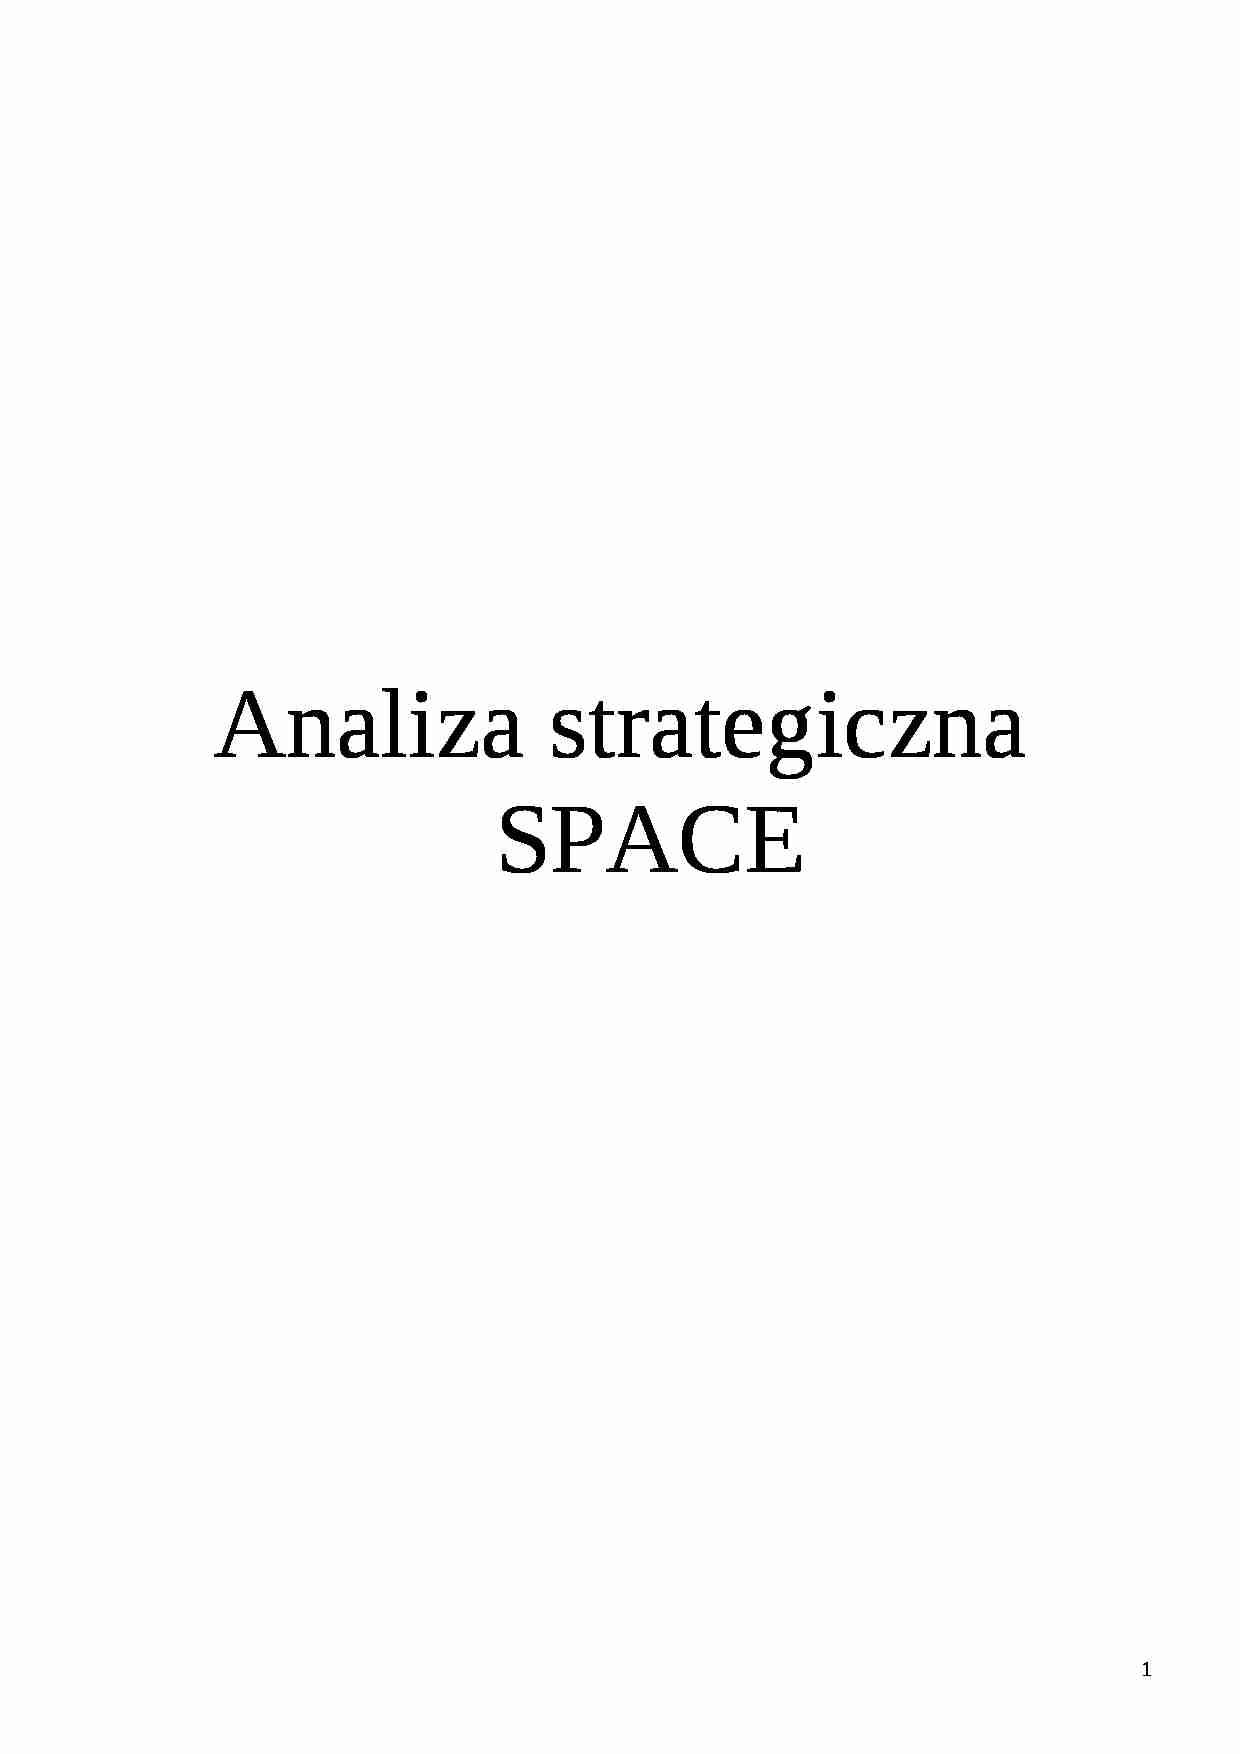 analiza strategiczna space - strona 1